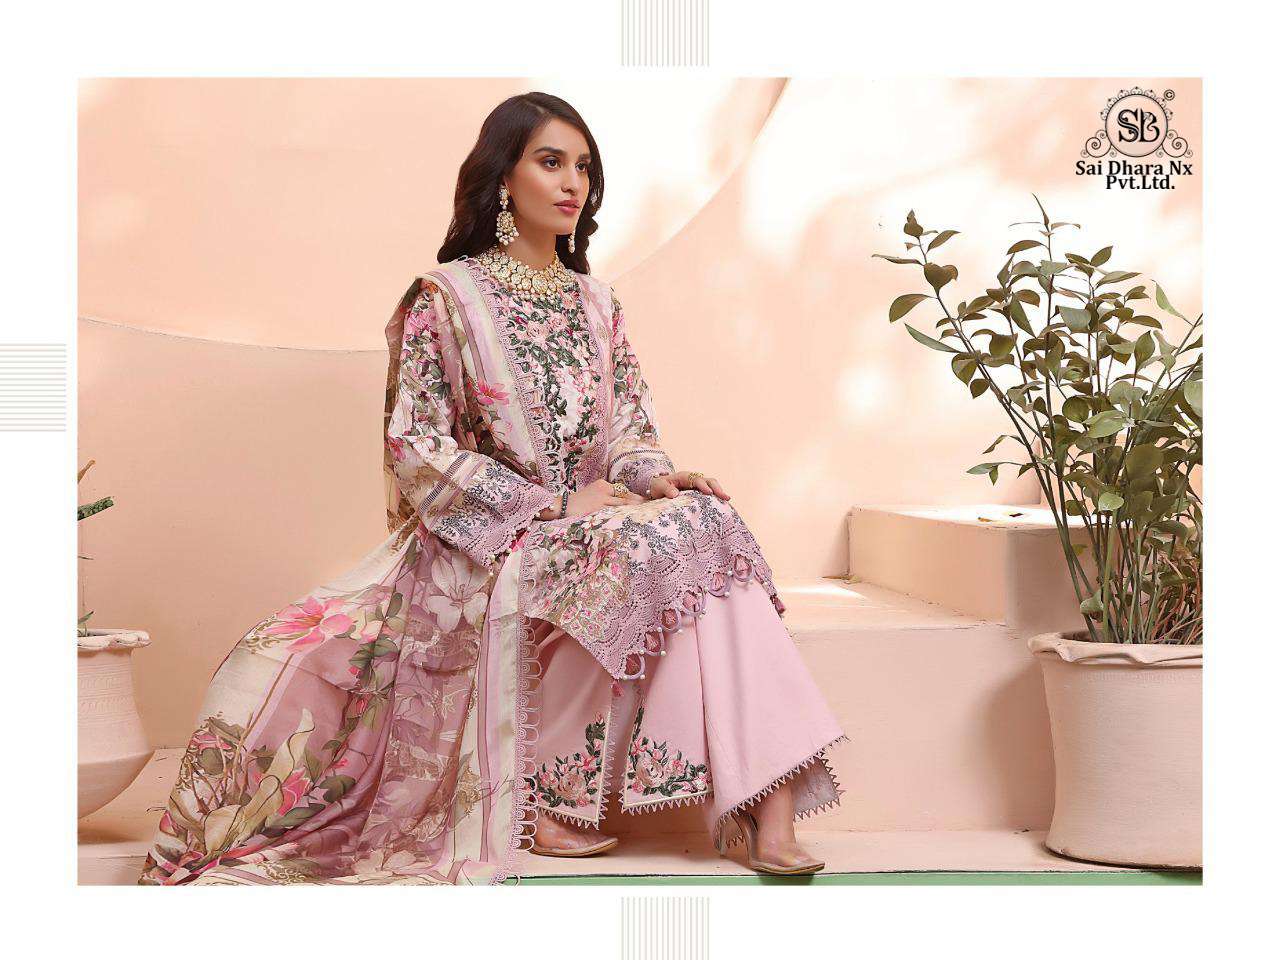 deepsy suits presents firdous queen 3 piece pakistani suit wholesale shop in surat - SaiDharaNx